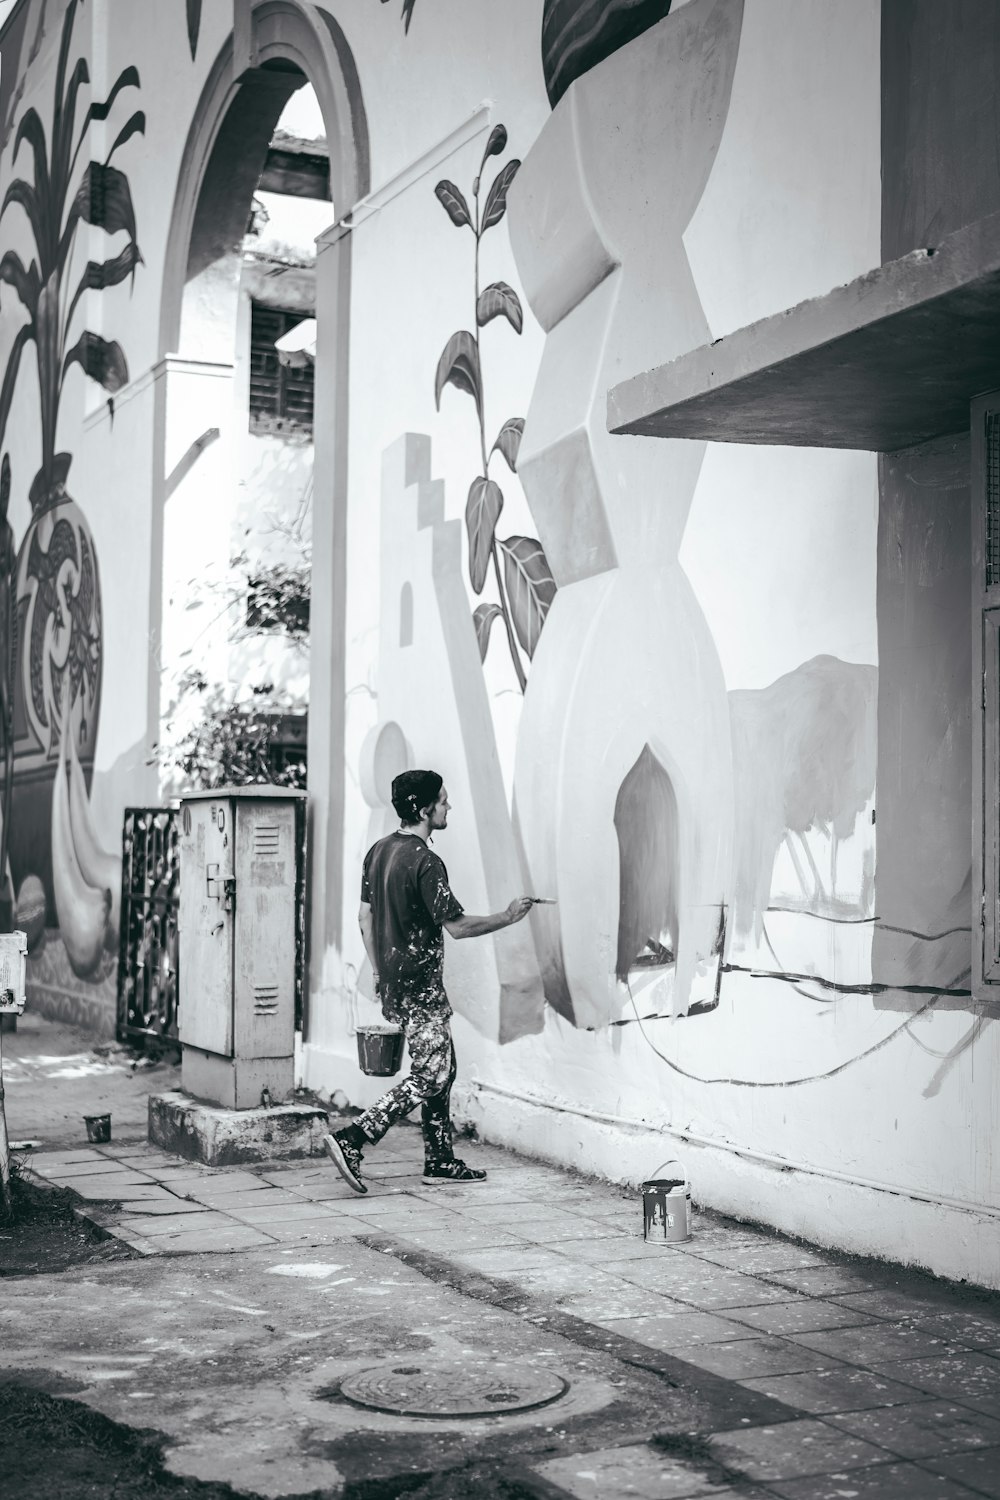 Foto in scala di grigi dell'uomo che dipinge sul muro